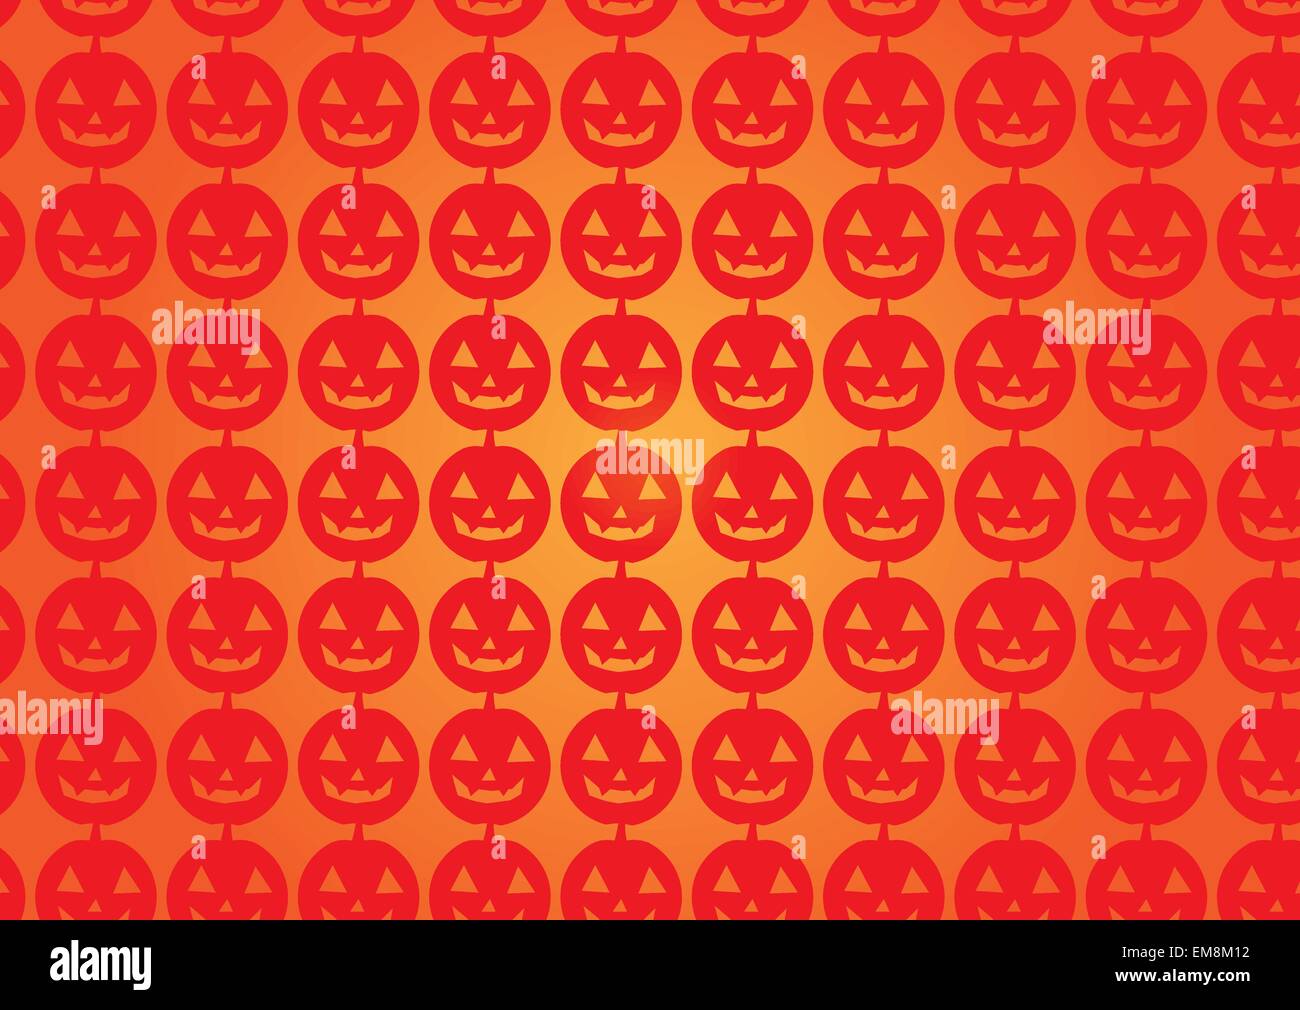 Halloween background Stock Vector